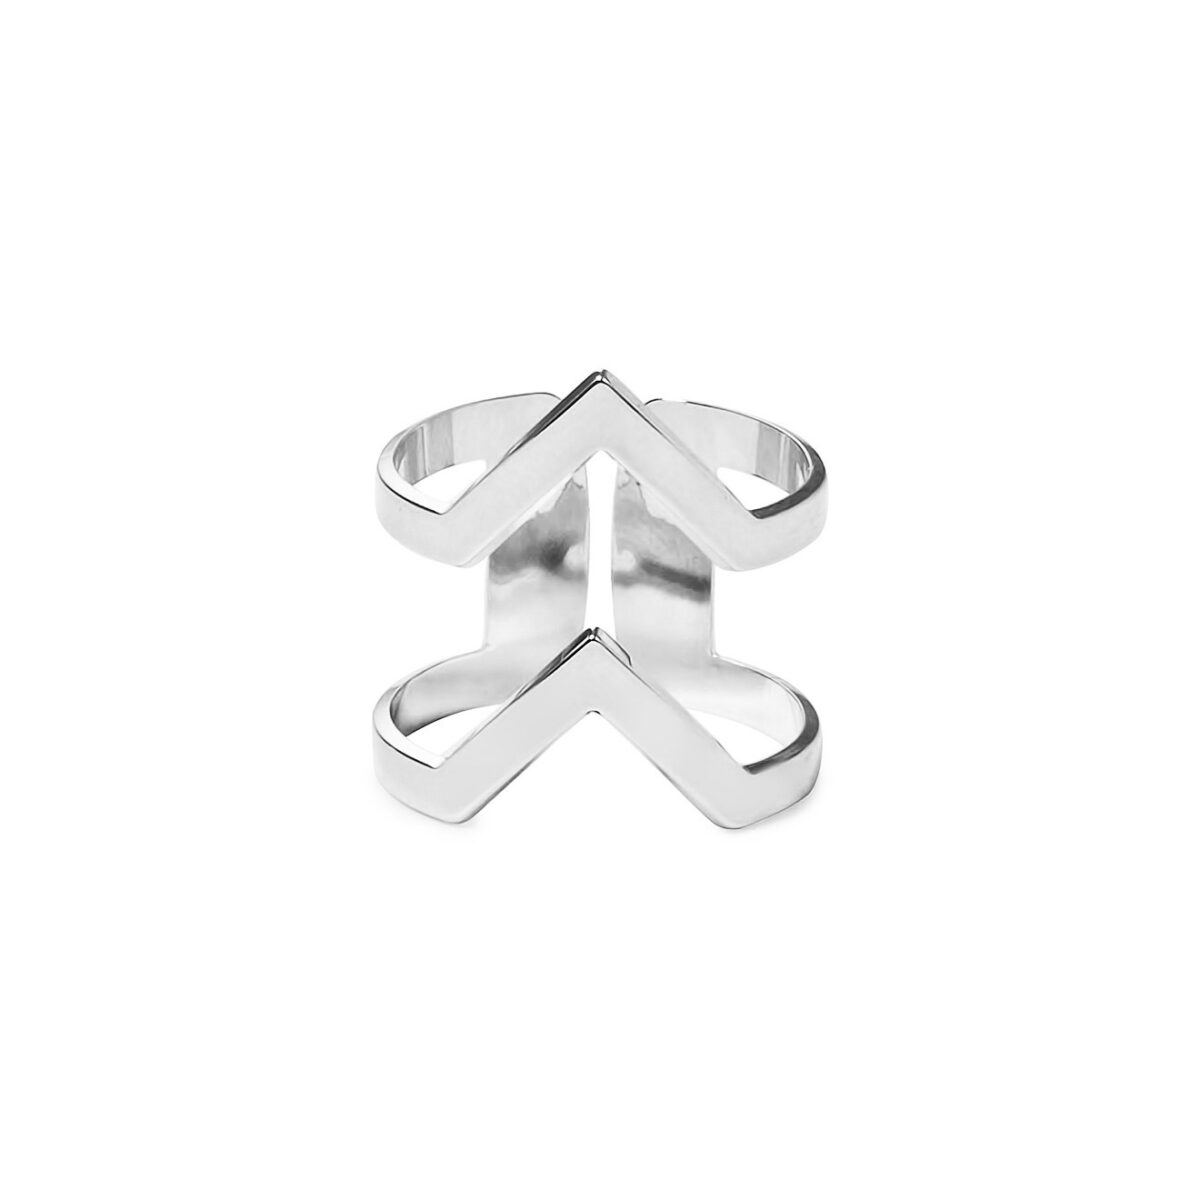 Покрытое серебром кольцо VV